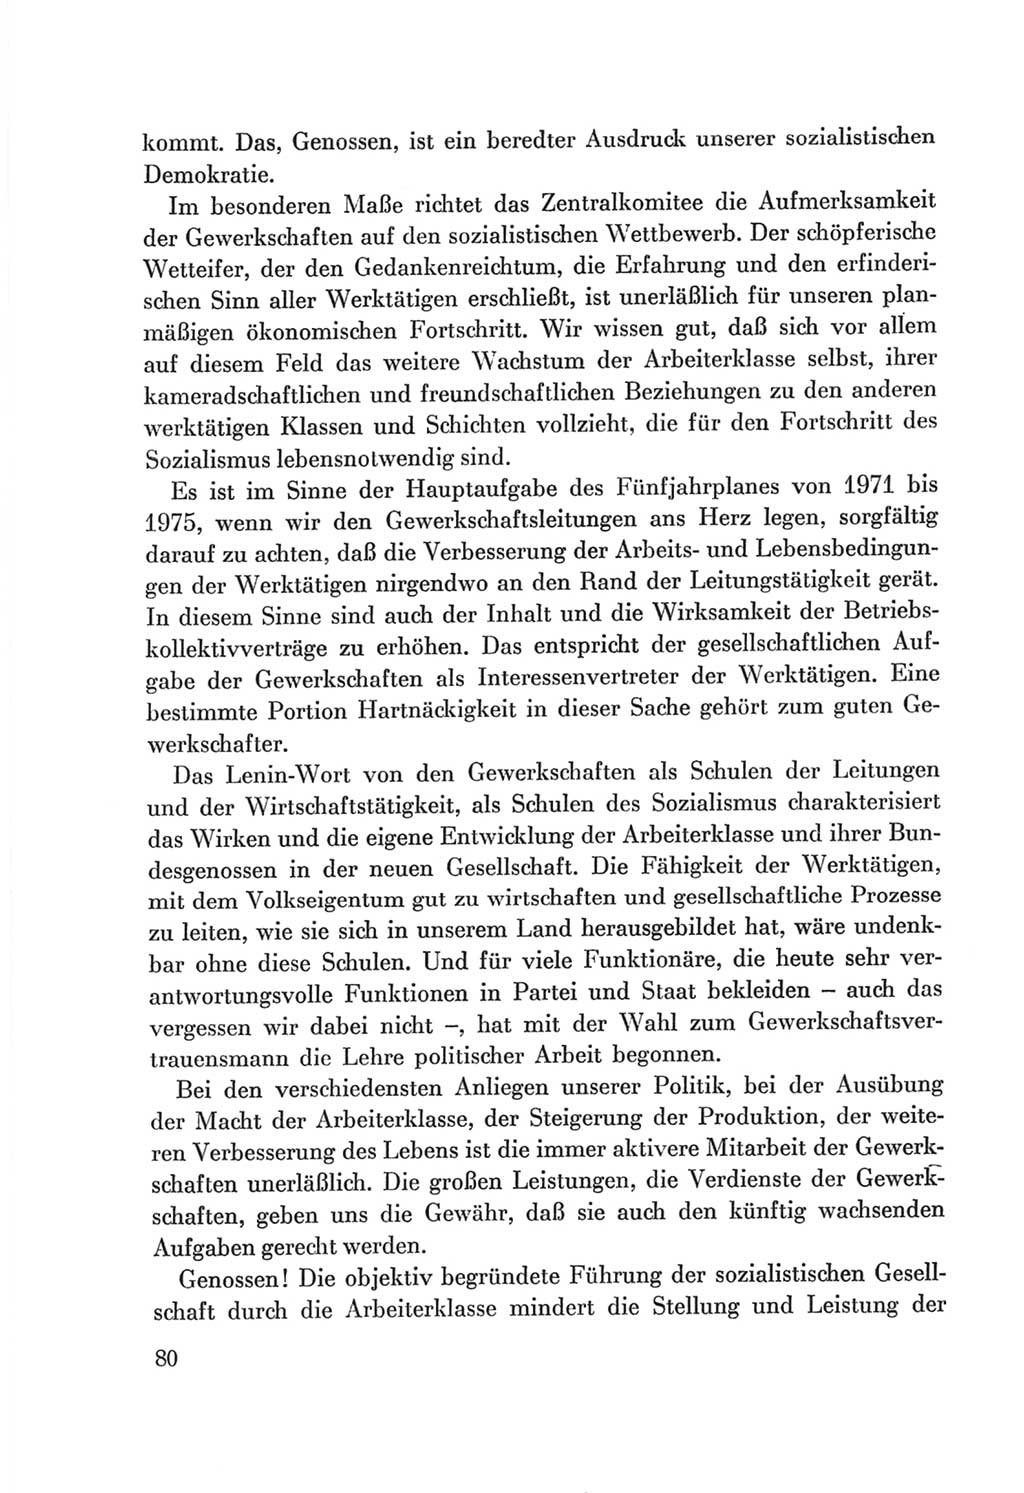 Protokoll der Verhandlungen des Ⅷ. Parteitages der Sozialistischen Einheitspartei Deutschlands (SED) [Deutsche Demokratische Republik (DDR)] 1971, Band 1, Seite 80 (Prot. Verh. Ⅷ. PT SED DDR 1971, Bd. 1, S. 80)